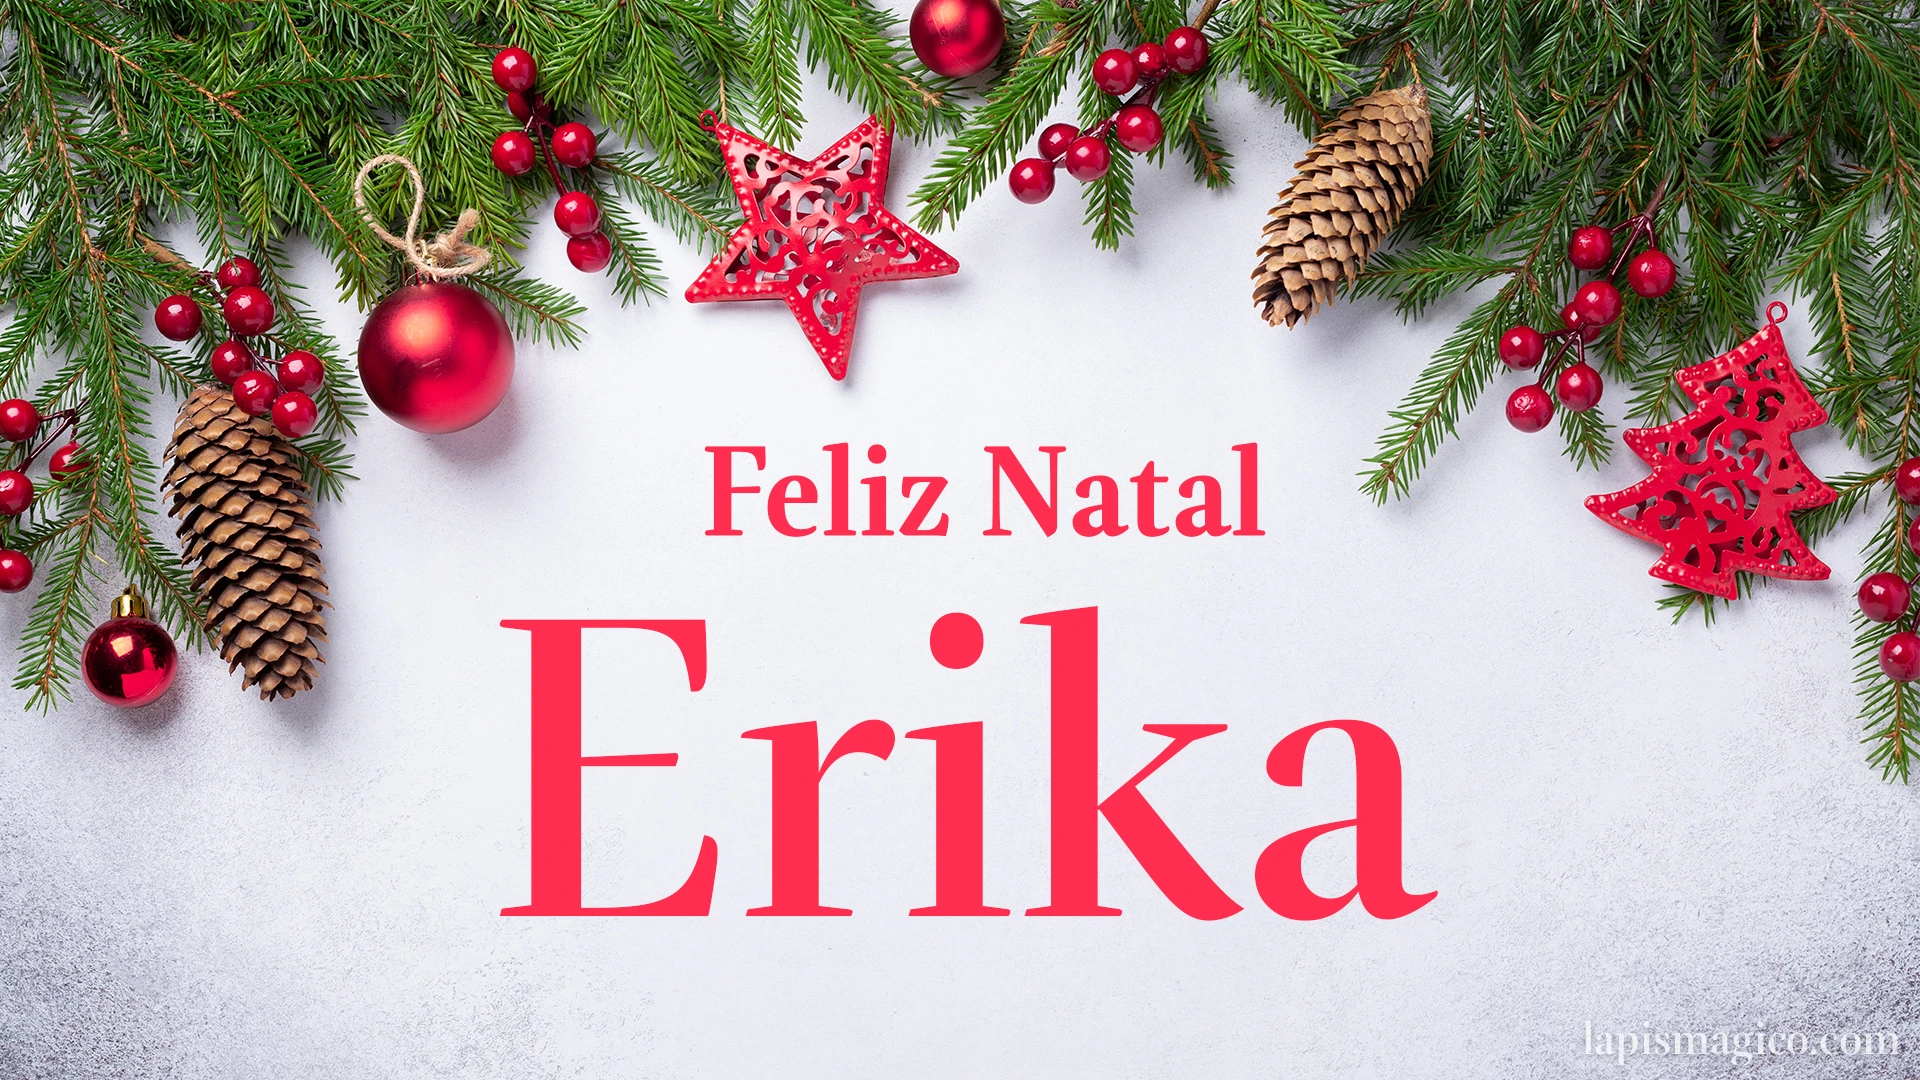 Oh Erika, cinco postais de Feliz Natal Postal com o teu nome